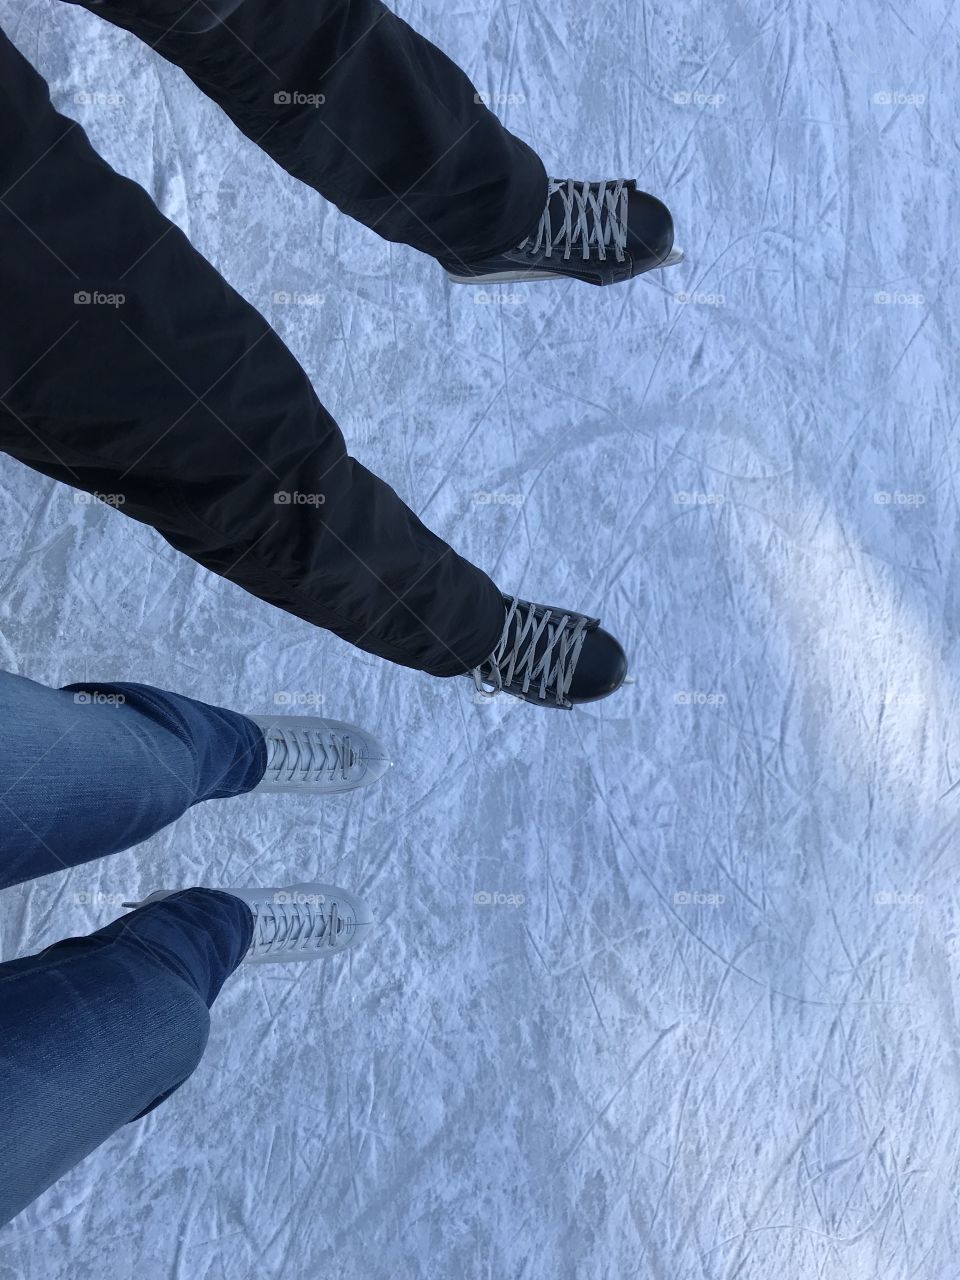 ice skating in winter 